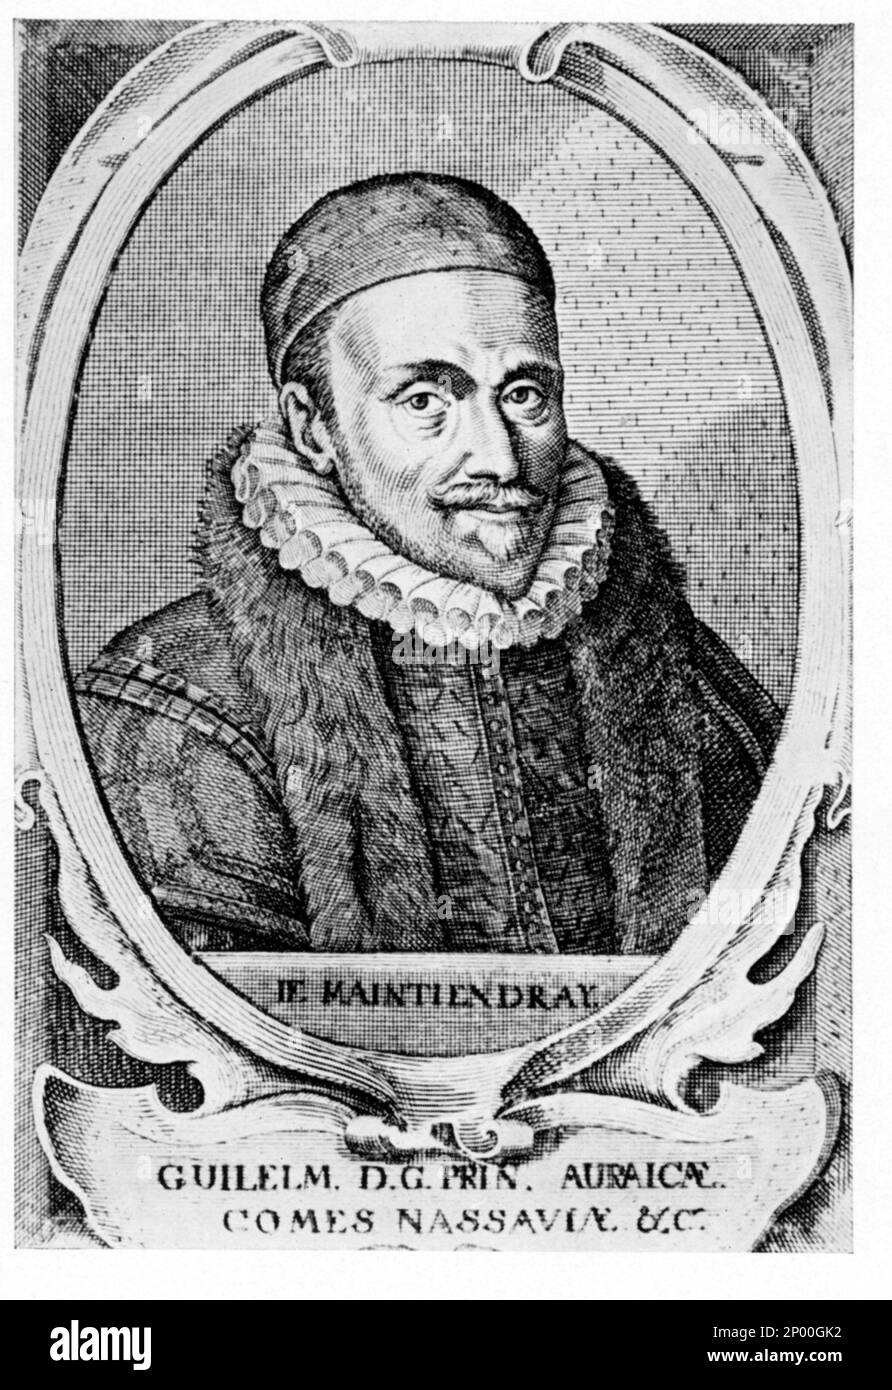 Der deutsche Graf von Nassau WILLHELM I ( GUGLIELMO IL TACITURNO , 1533 - 1584 ), Prinz von Orange , Gouverneur der Niederlande , Seeland und Ultrecht - Governatore - Hut - cappello - Felle - Pelliccia - CHIESA ANGLICANA - Kragen - colletto - WILHELM - OLANDA - PAESI BASSI --- Archivio GBB Stockfoto